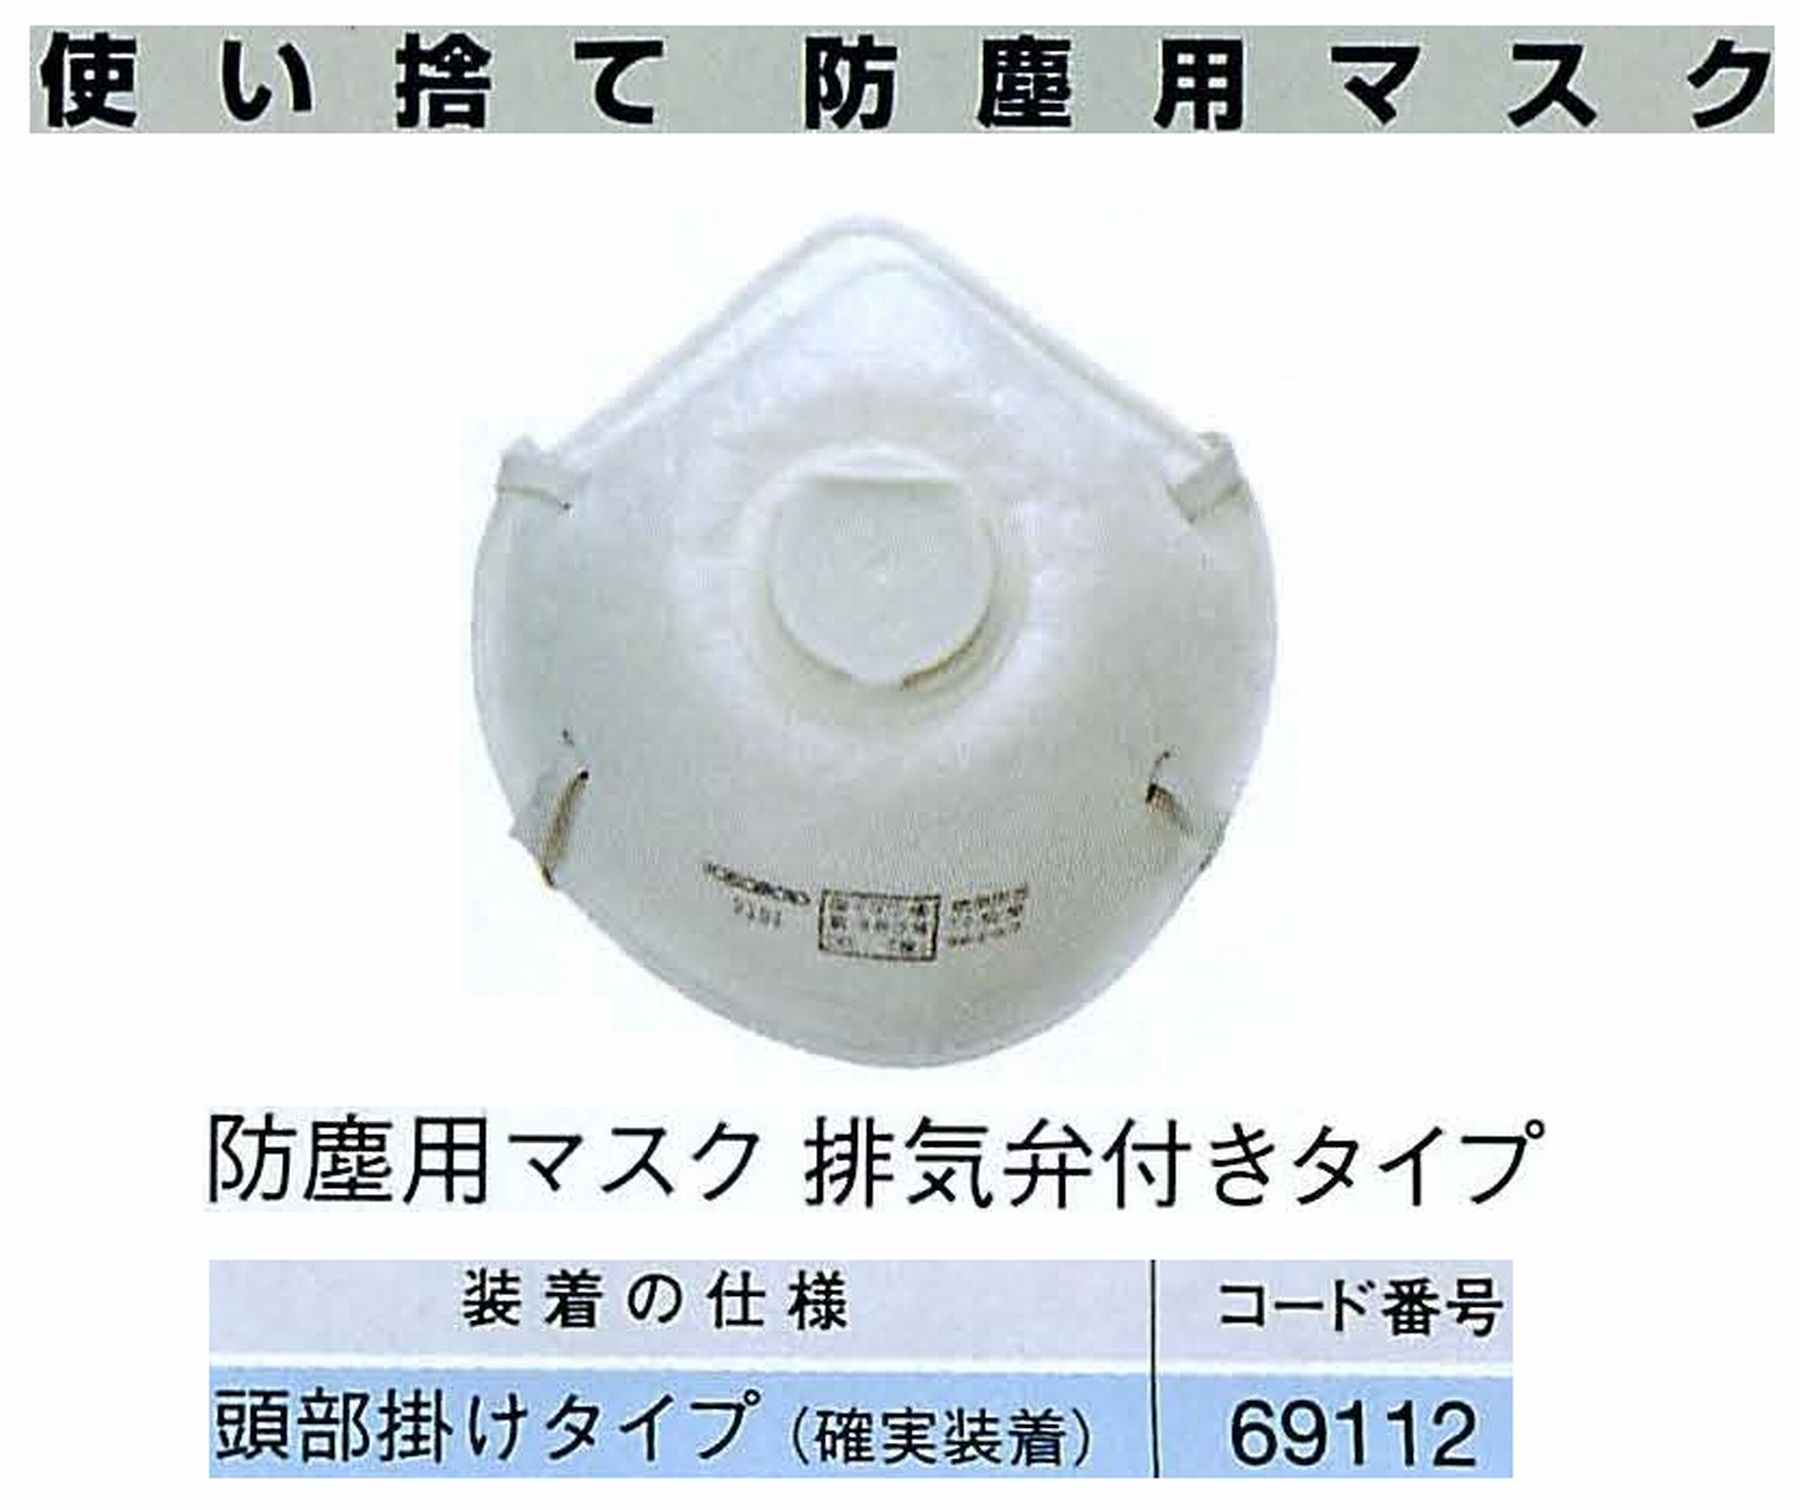 ナカニシ/NAKANISHI 防護用品 使い捨て防塵用マスク 排気弁付きタイプ 69112